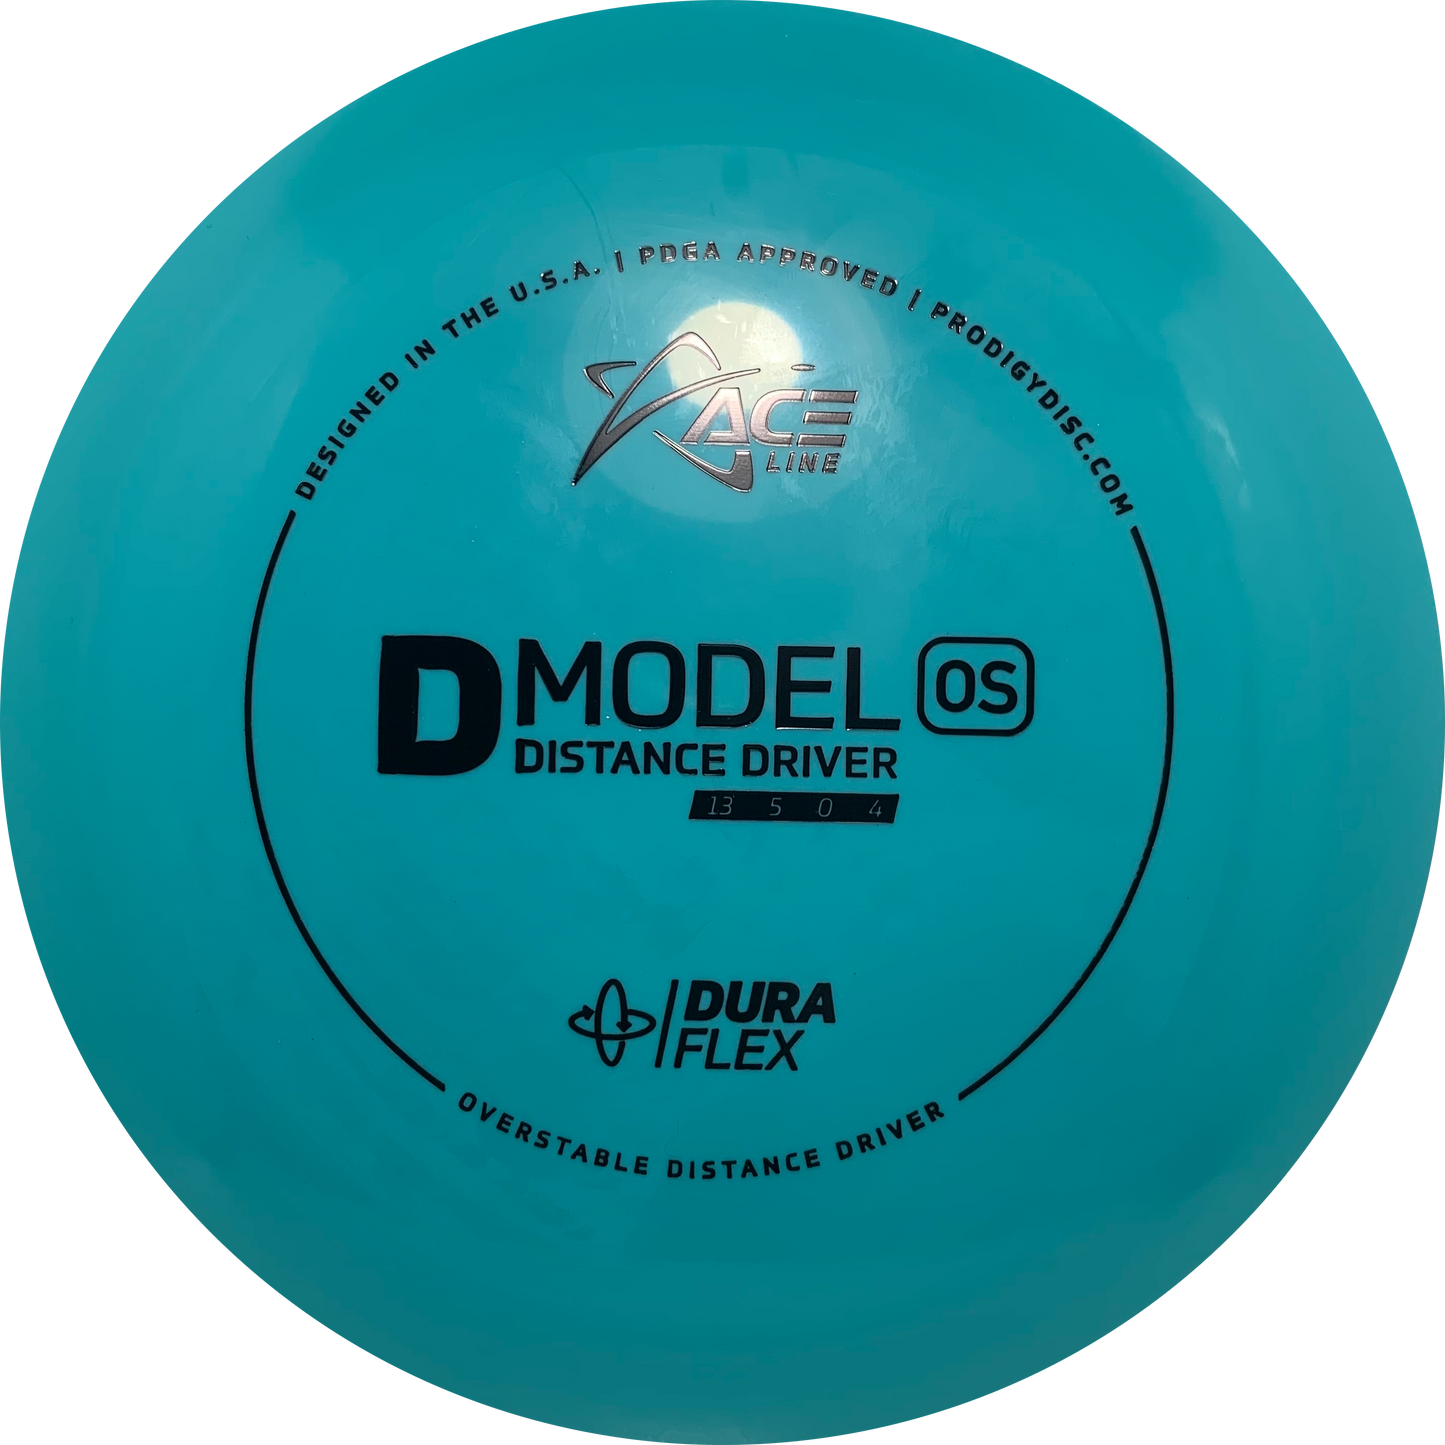 D Model OS - DuraFlex